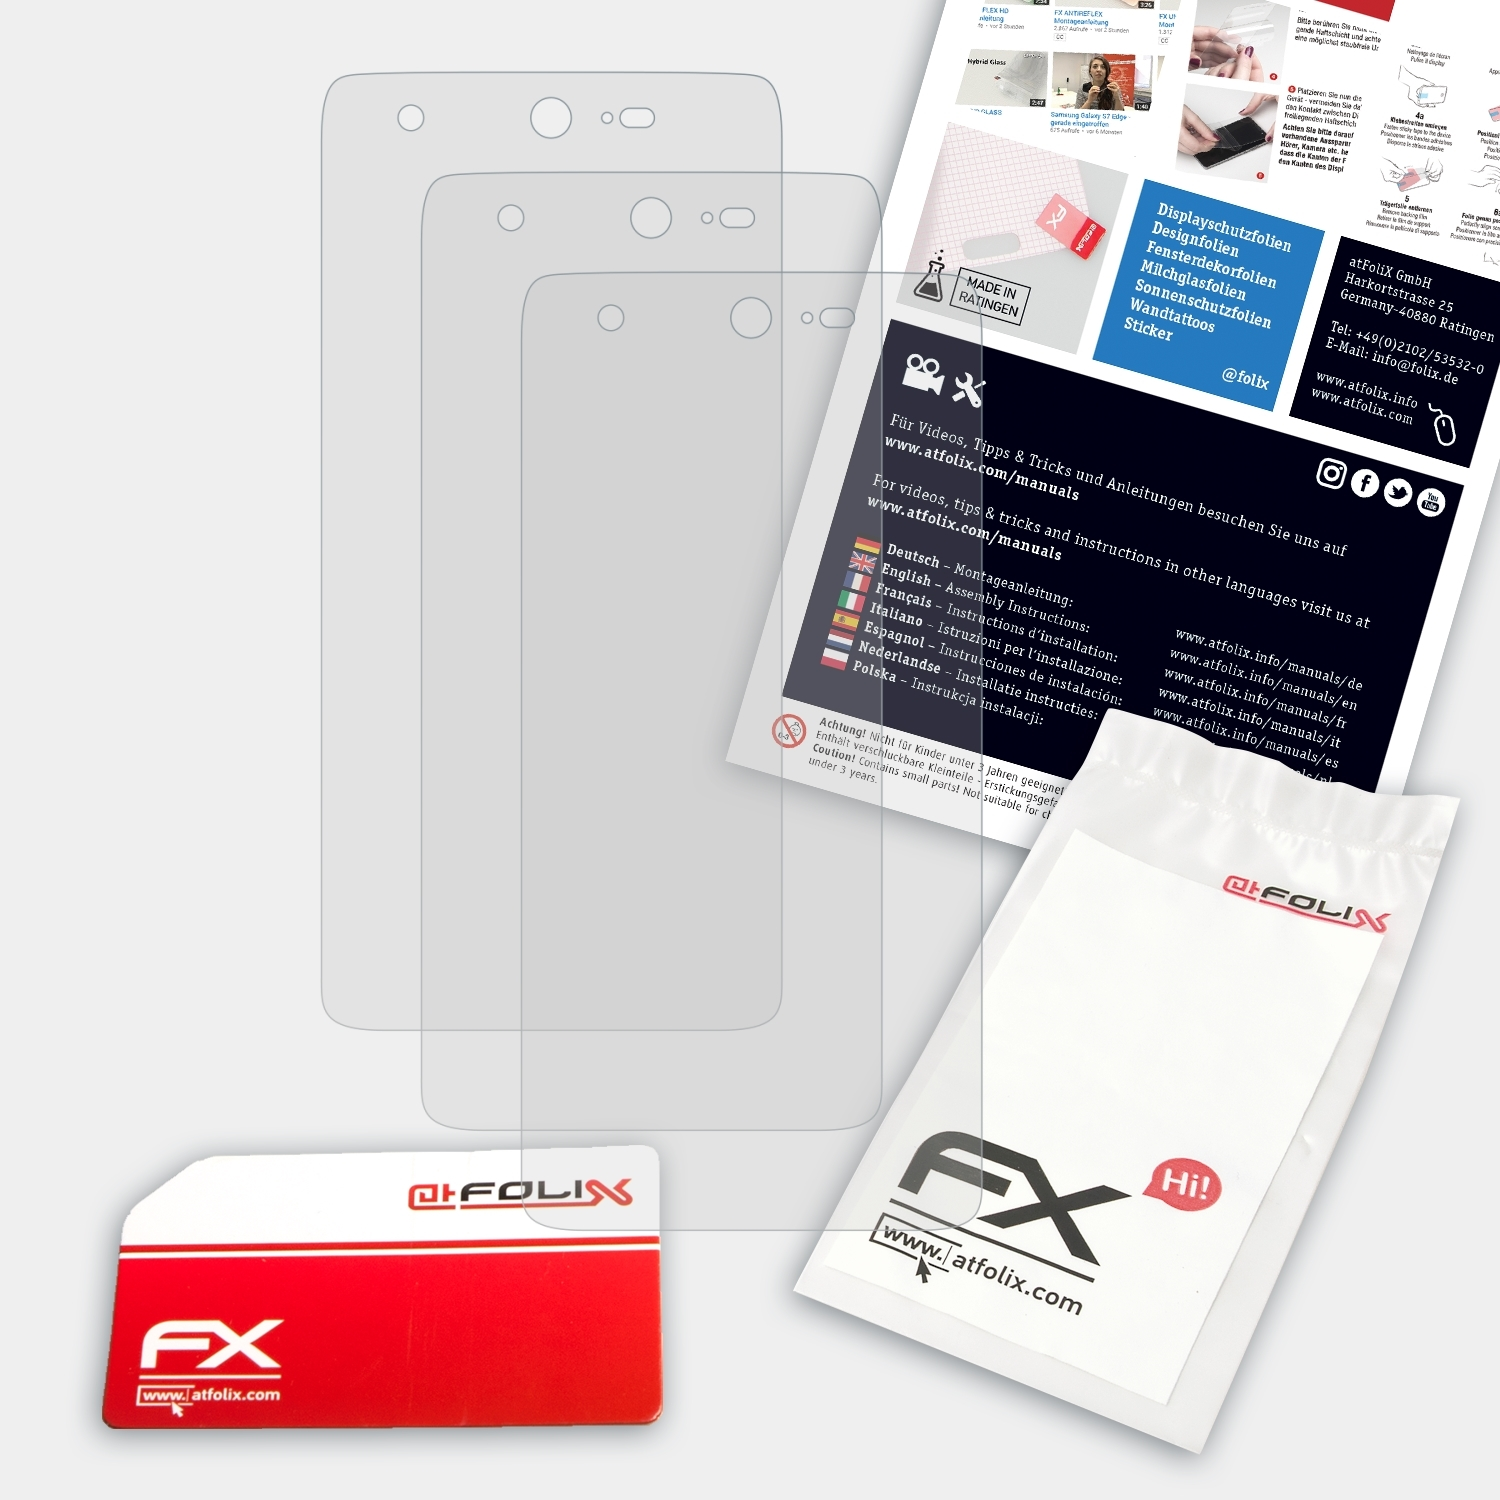 FX-Antireflex Sharp ATFOLIX Displayschutz(für 3x Z2)